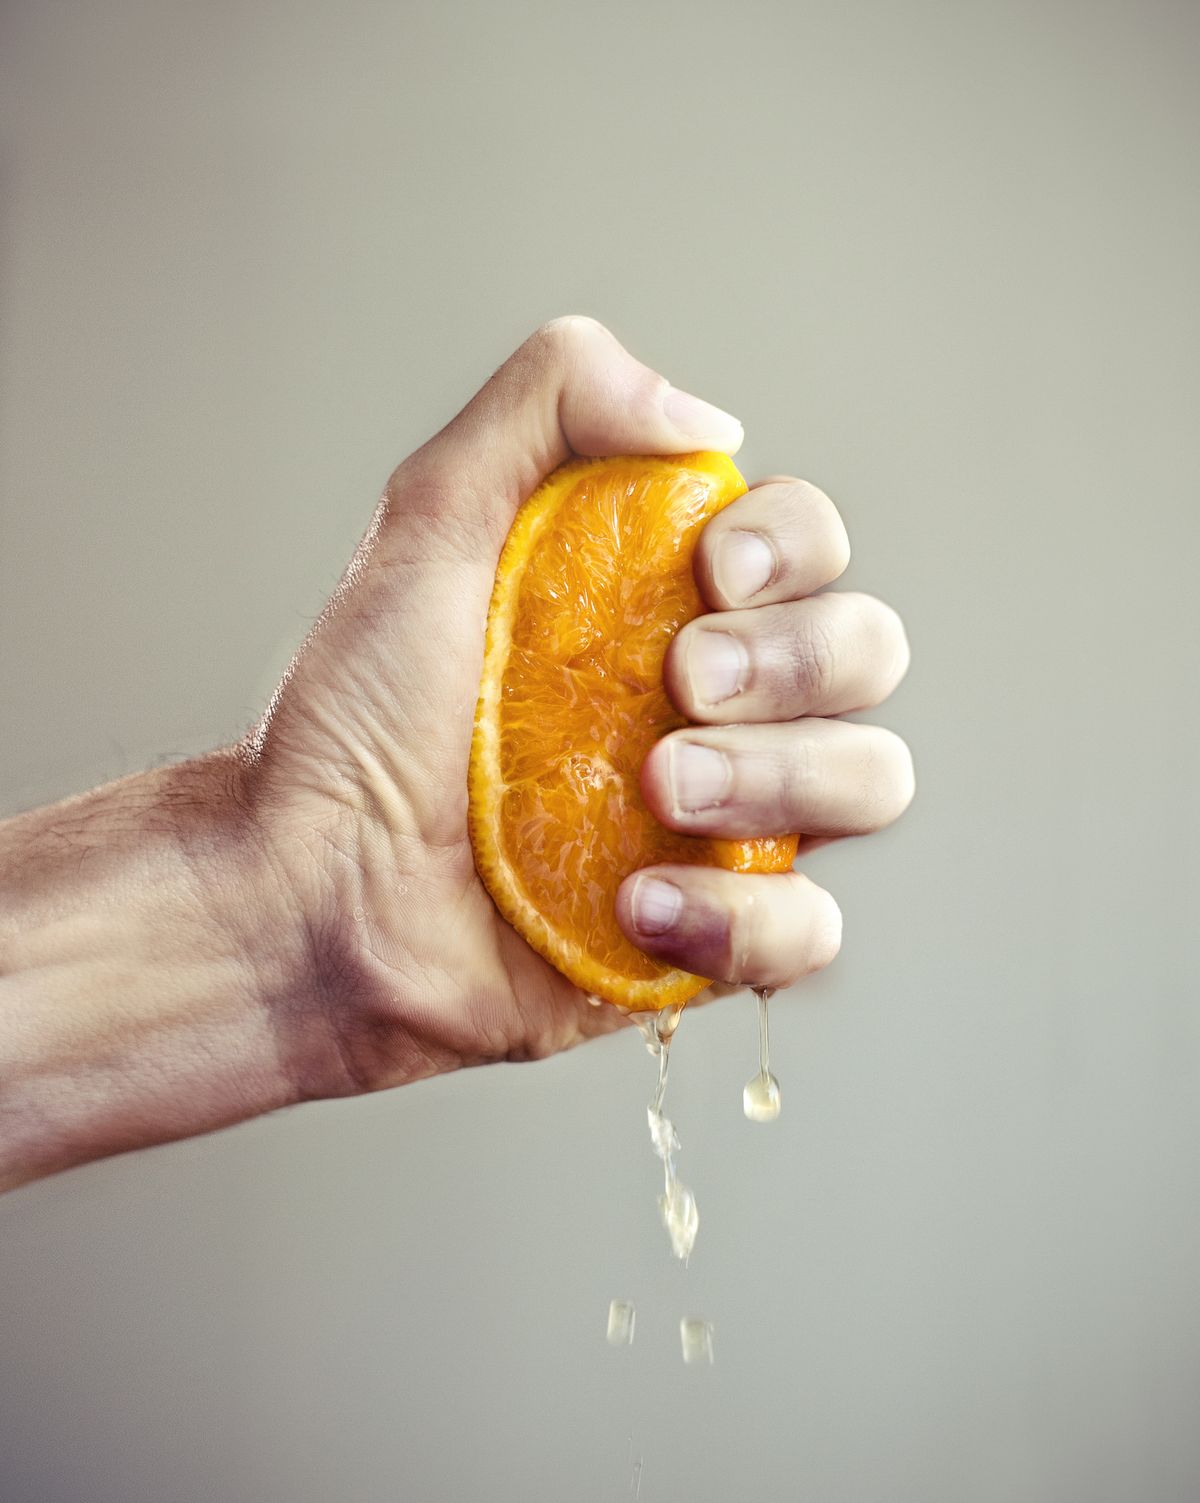 Hand squeezing orange